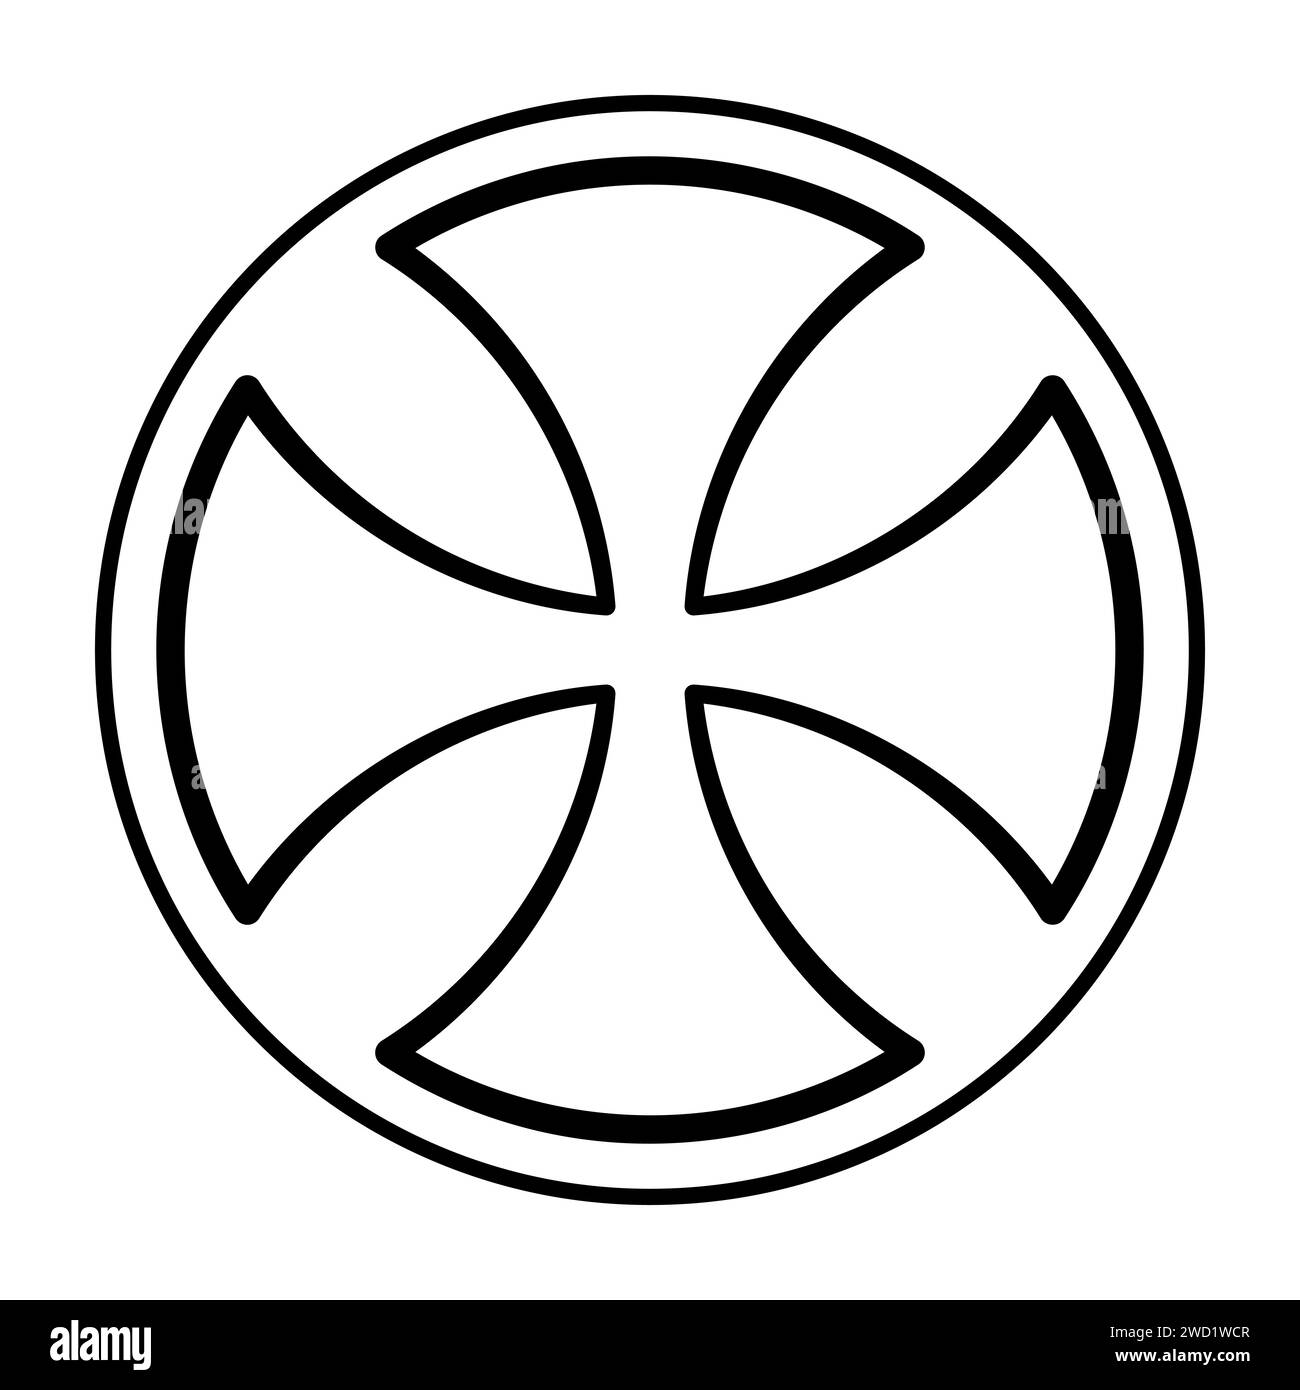 Croix celtique ancienne, une galette de croix, avec les extrémités arrondies des bras, parfois appelée croix alisee, également connue sous le nom de croix formy. Symbole et signe. Banque D'Images